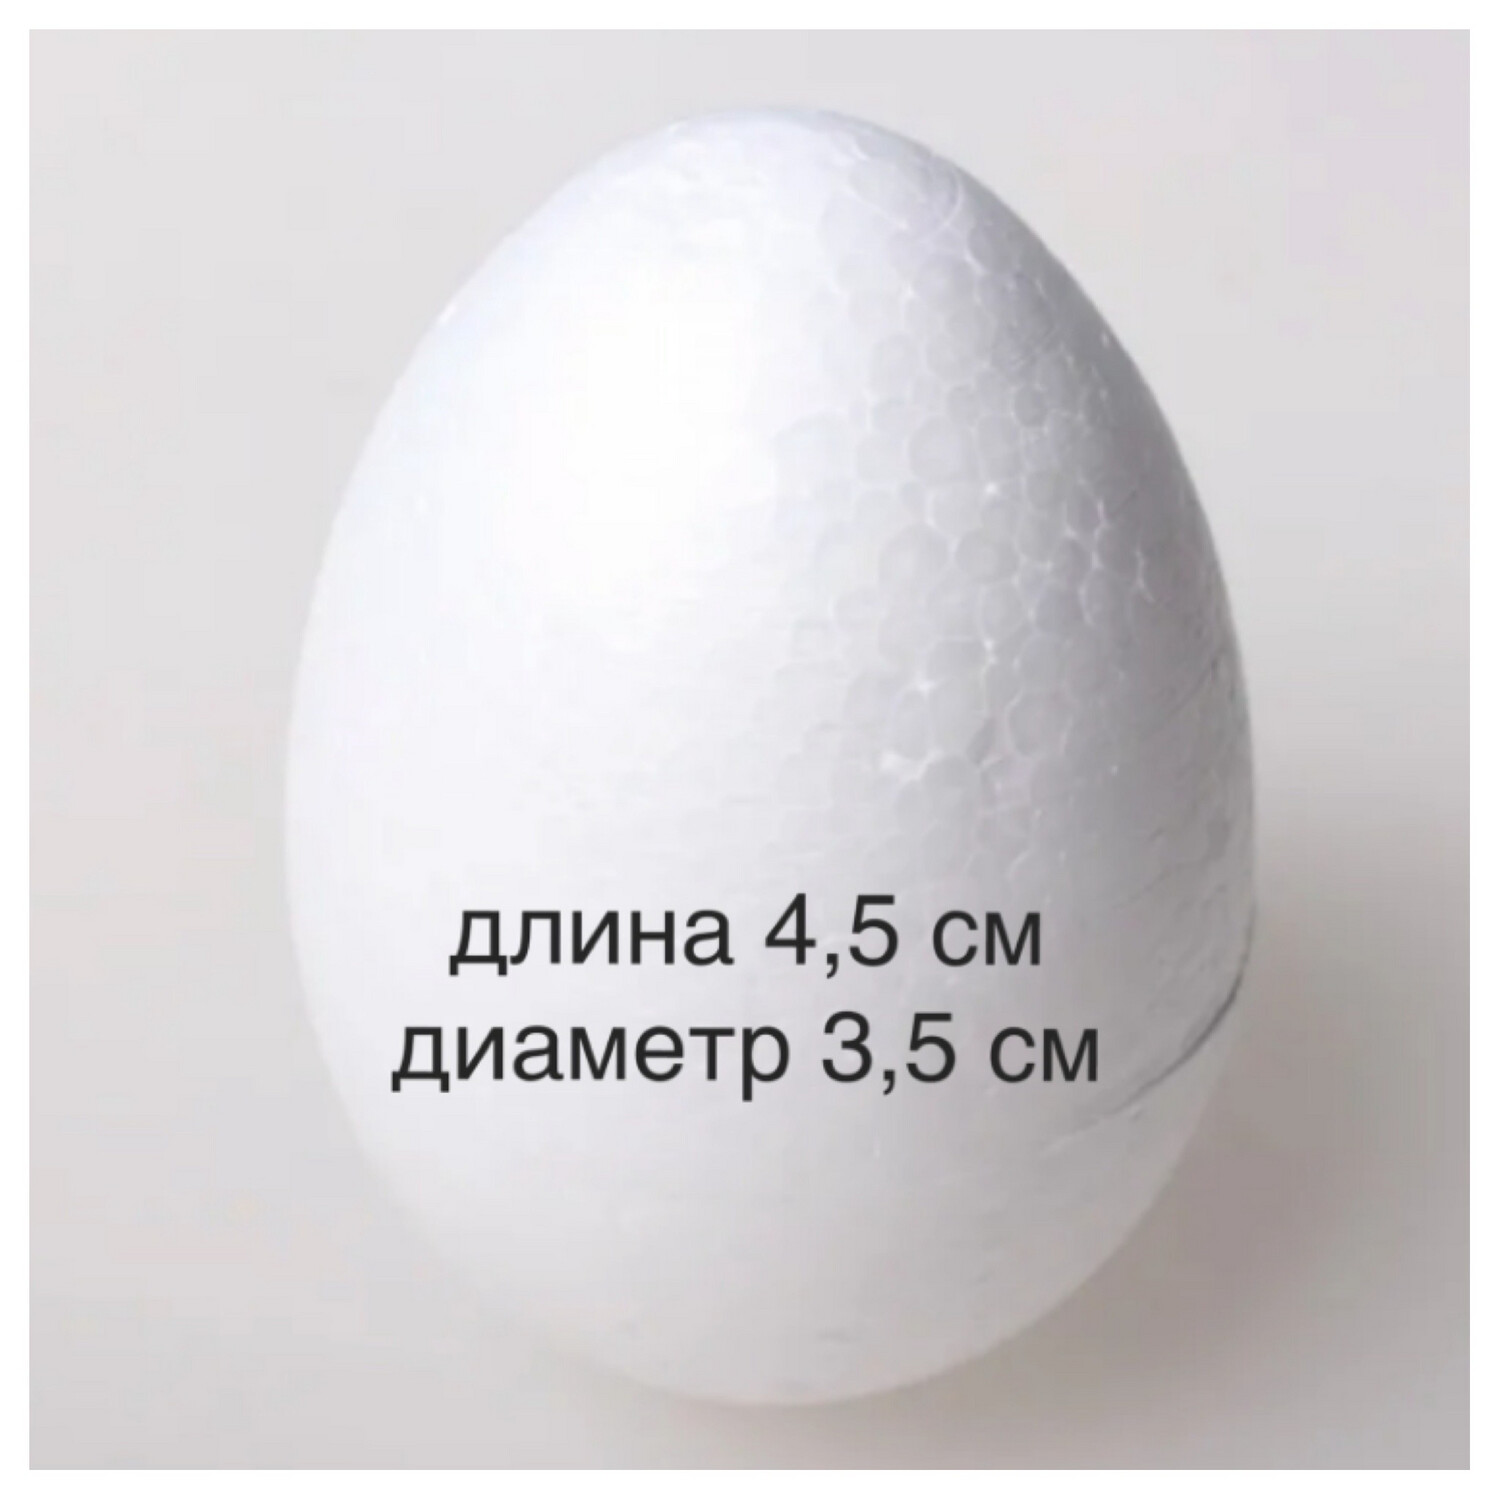 Яйцо пенопластовое, размер 4,5 х 3,5 см